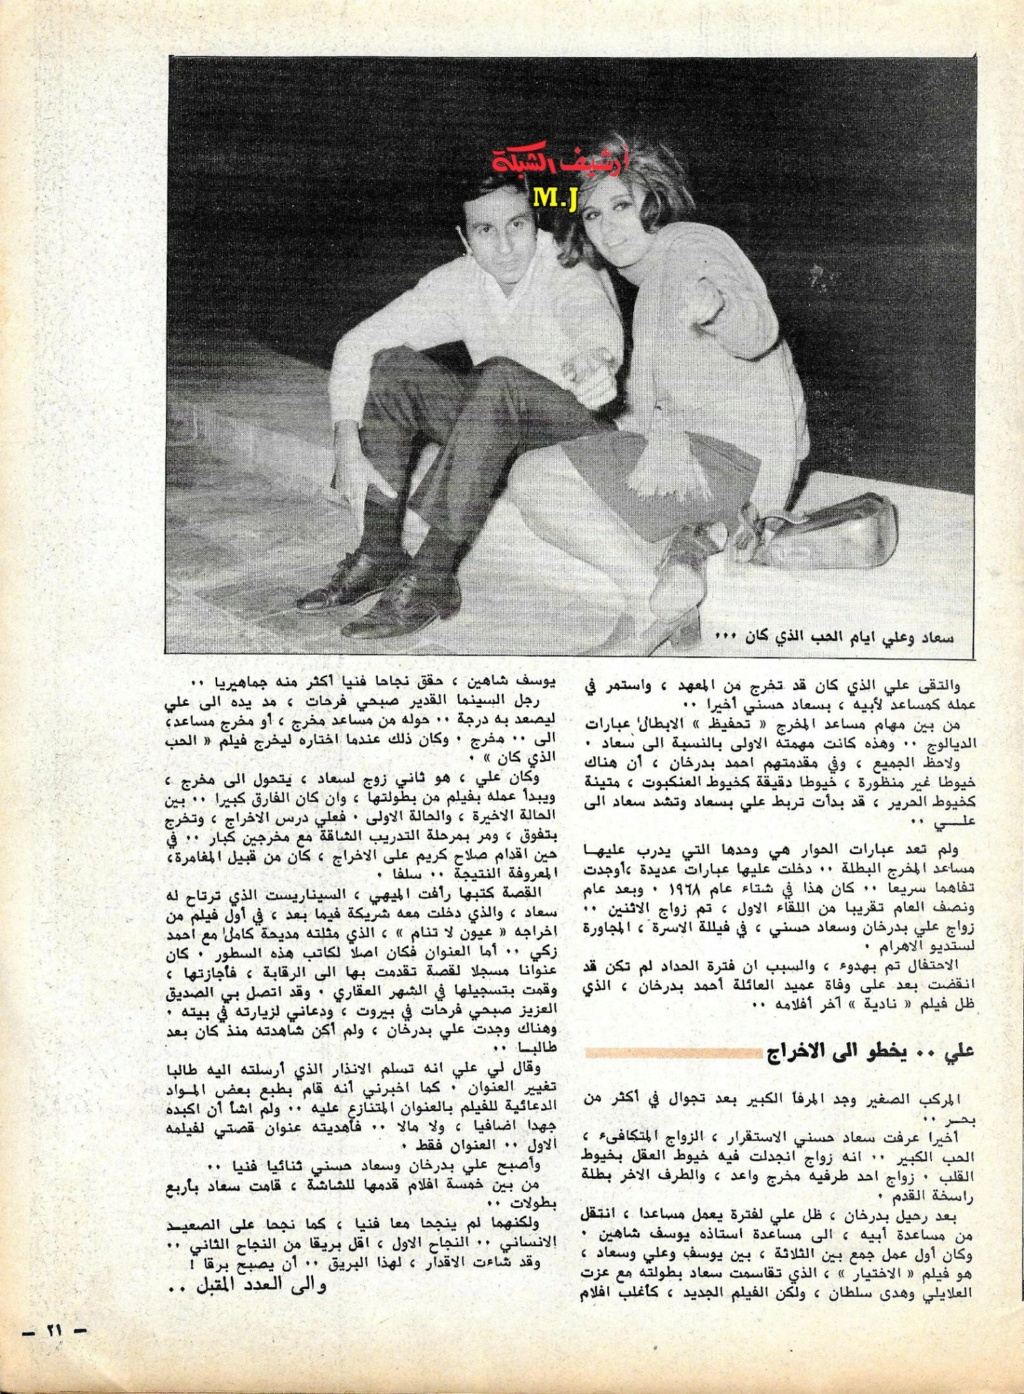 الذي - مقال صحفي : سعاد حسني وعلي بدرخان وقصة الحب الذي كان 1981 م 810